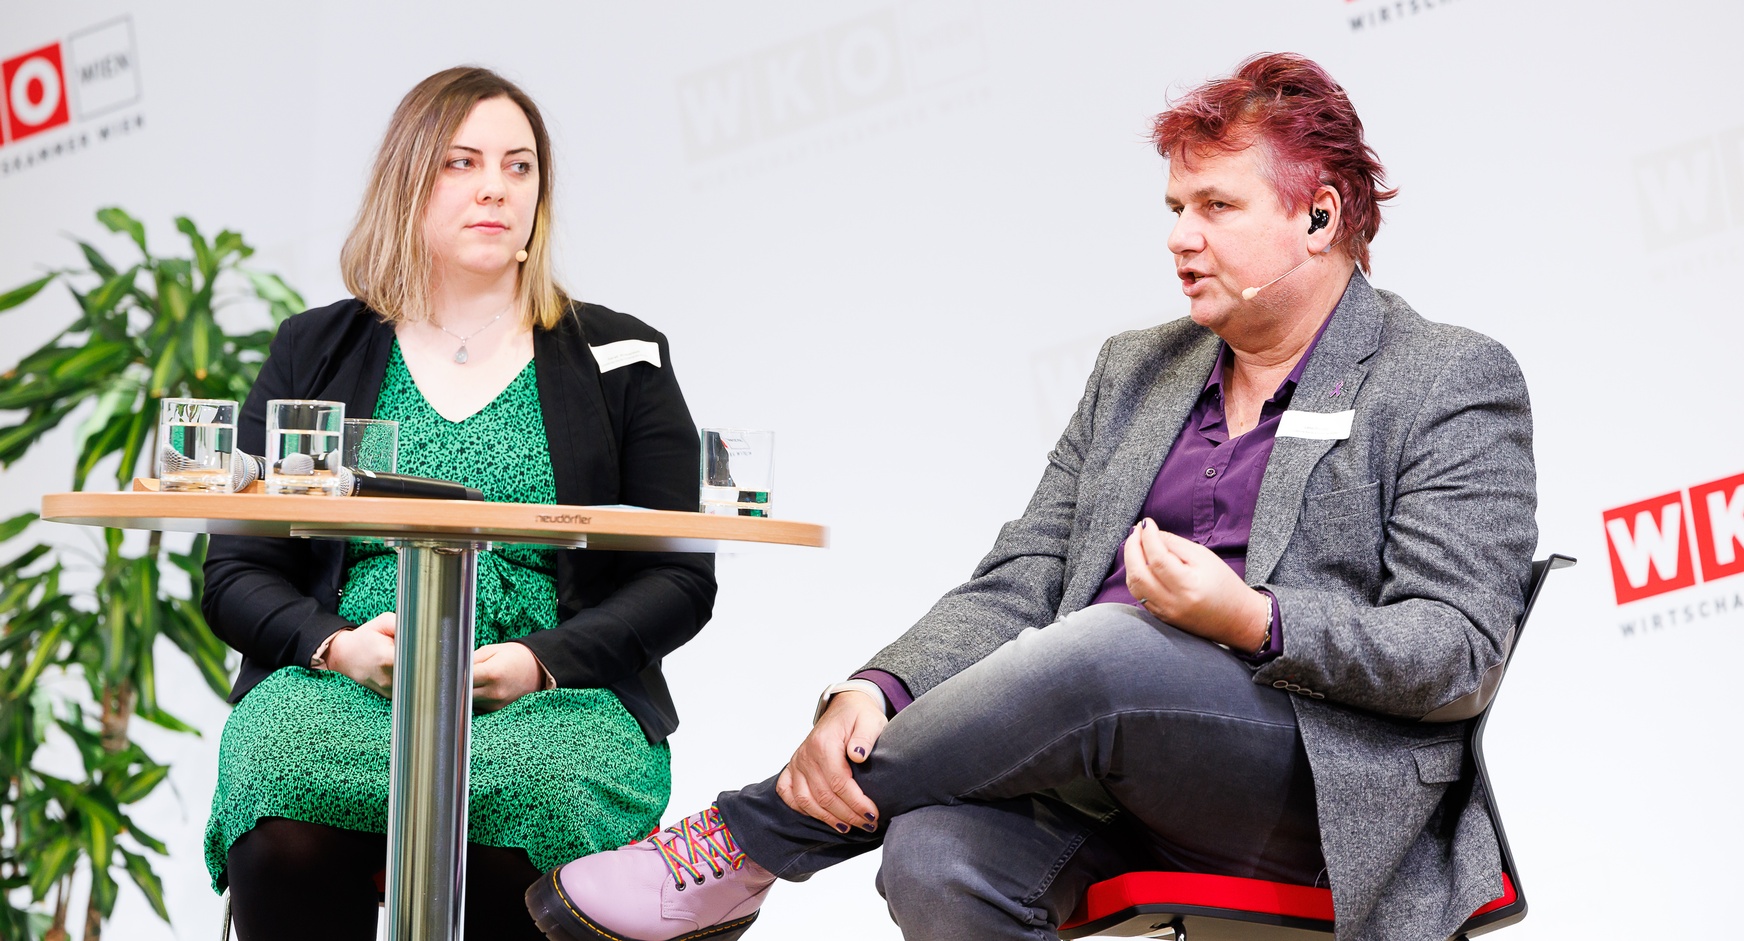 Zwei Personen mit Headmikrofonen sitzen auf erhöhten Stühlen neben Stehtisch auf Bühne vor Wand mit rotweißen Logos WKO und Schriftzügen Wirtschaftskammer Wien, eine der Personen spricht